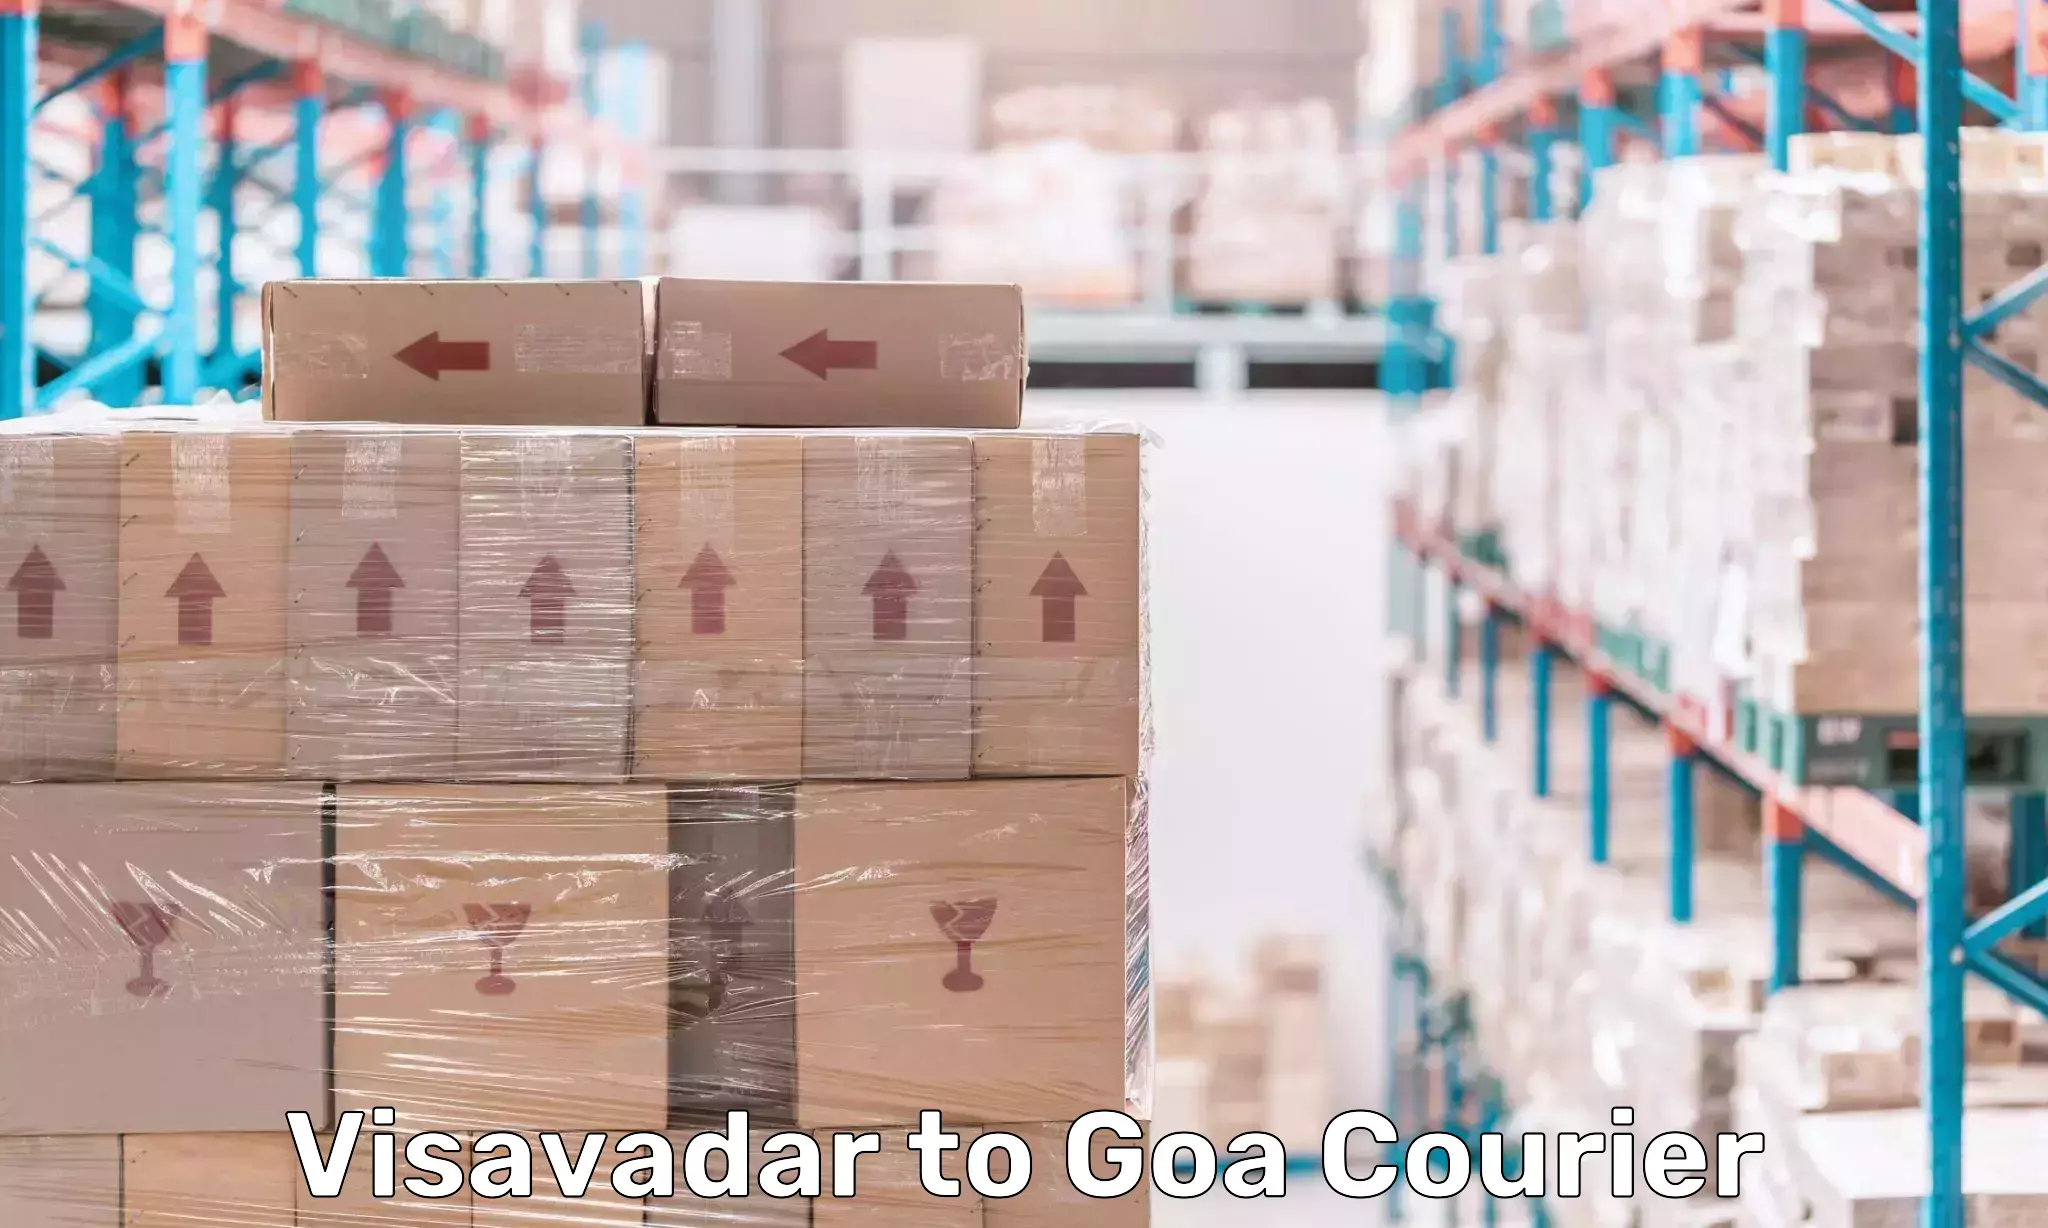 User-friendly courier app Visavadar to Goa